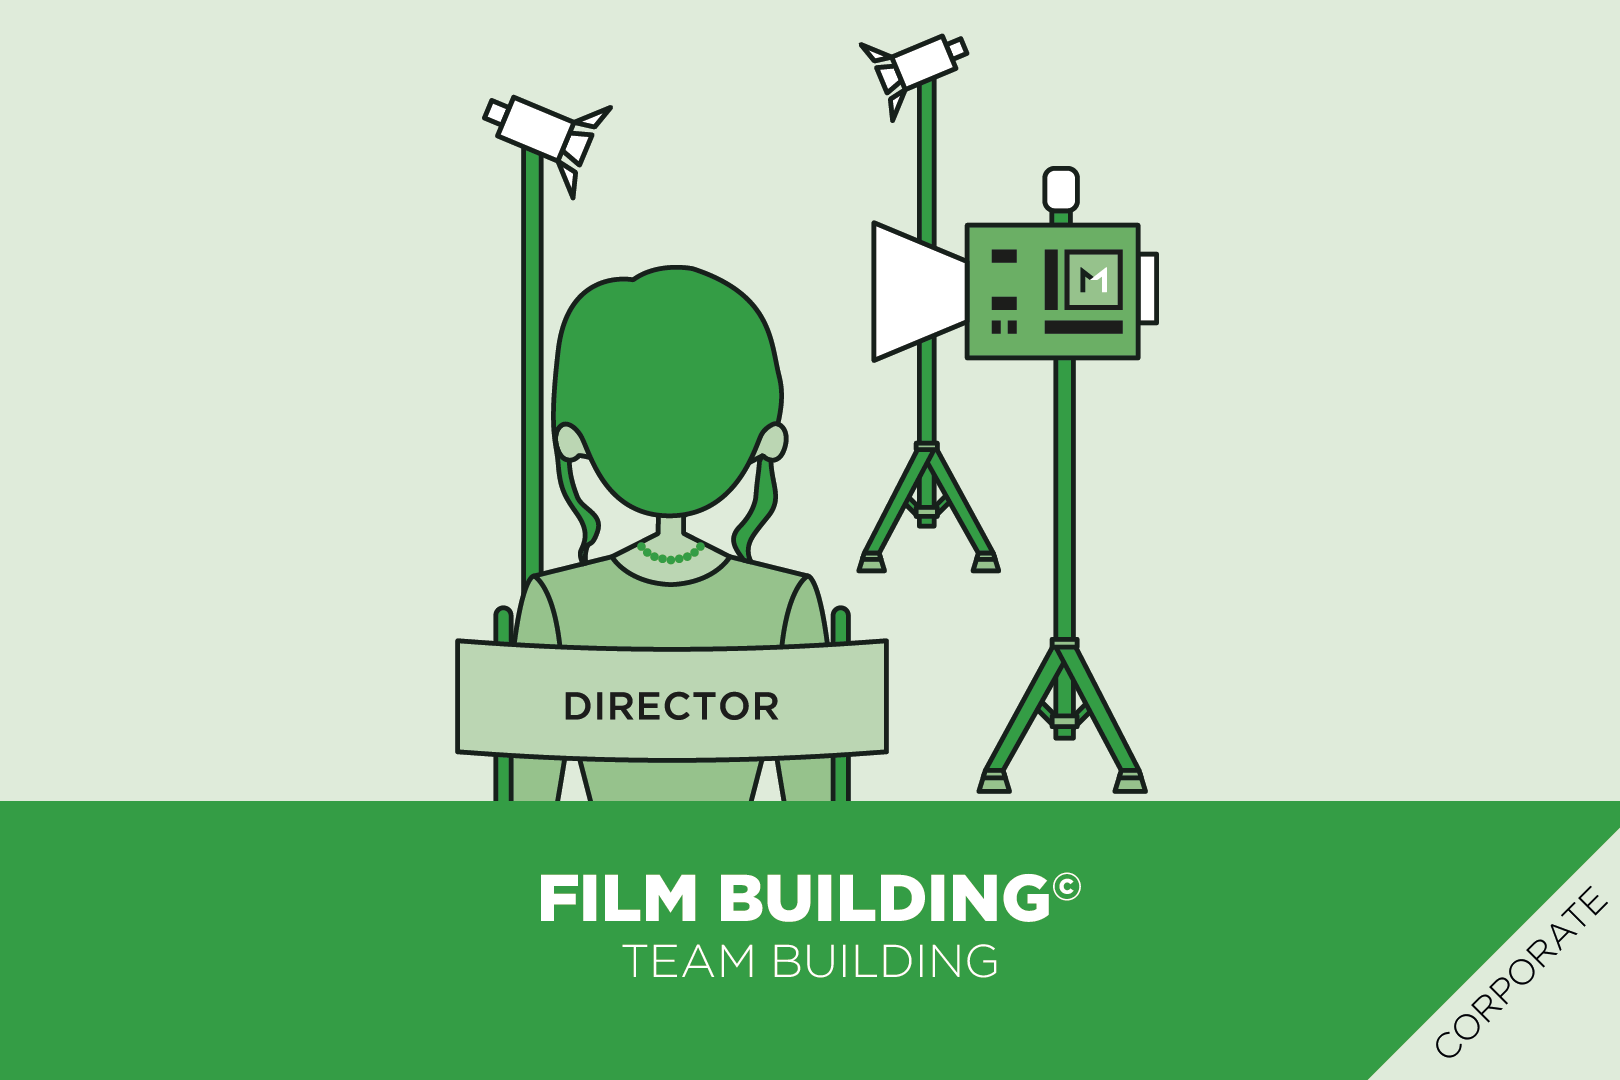 Film_Building_MultiOlistica_Business_Training